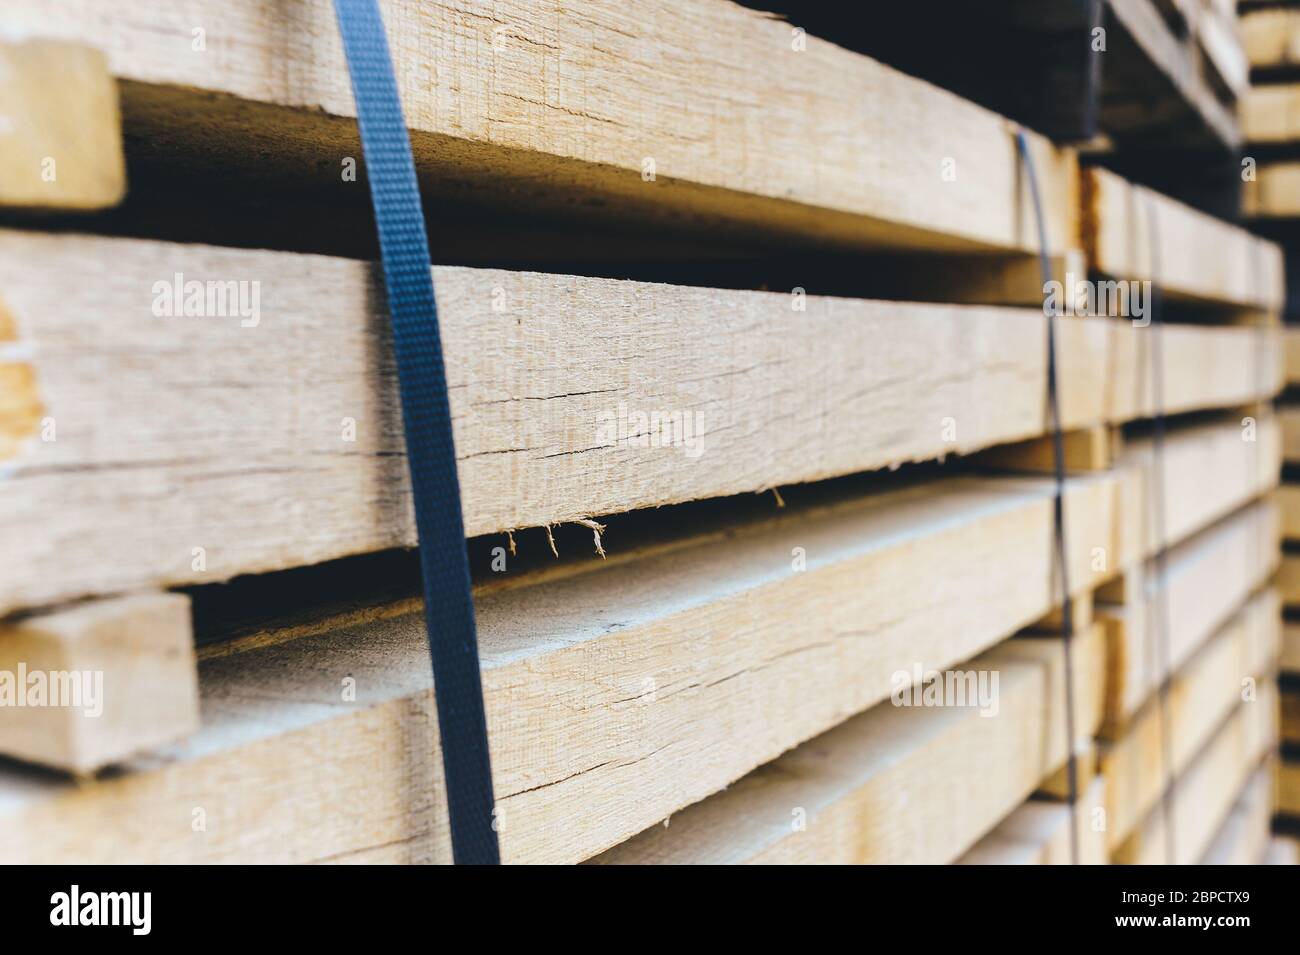 Stapel von Holzbalken. Quadratische Enden der Holzstäbe. Holz Holzbaumaterial für Hintergrund und Textur. Nahaufnahme. Stockfoto